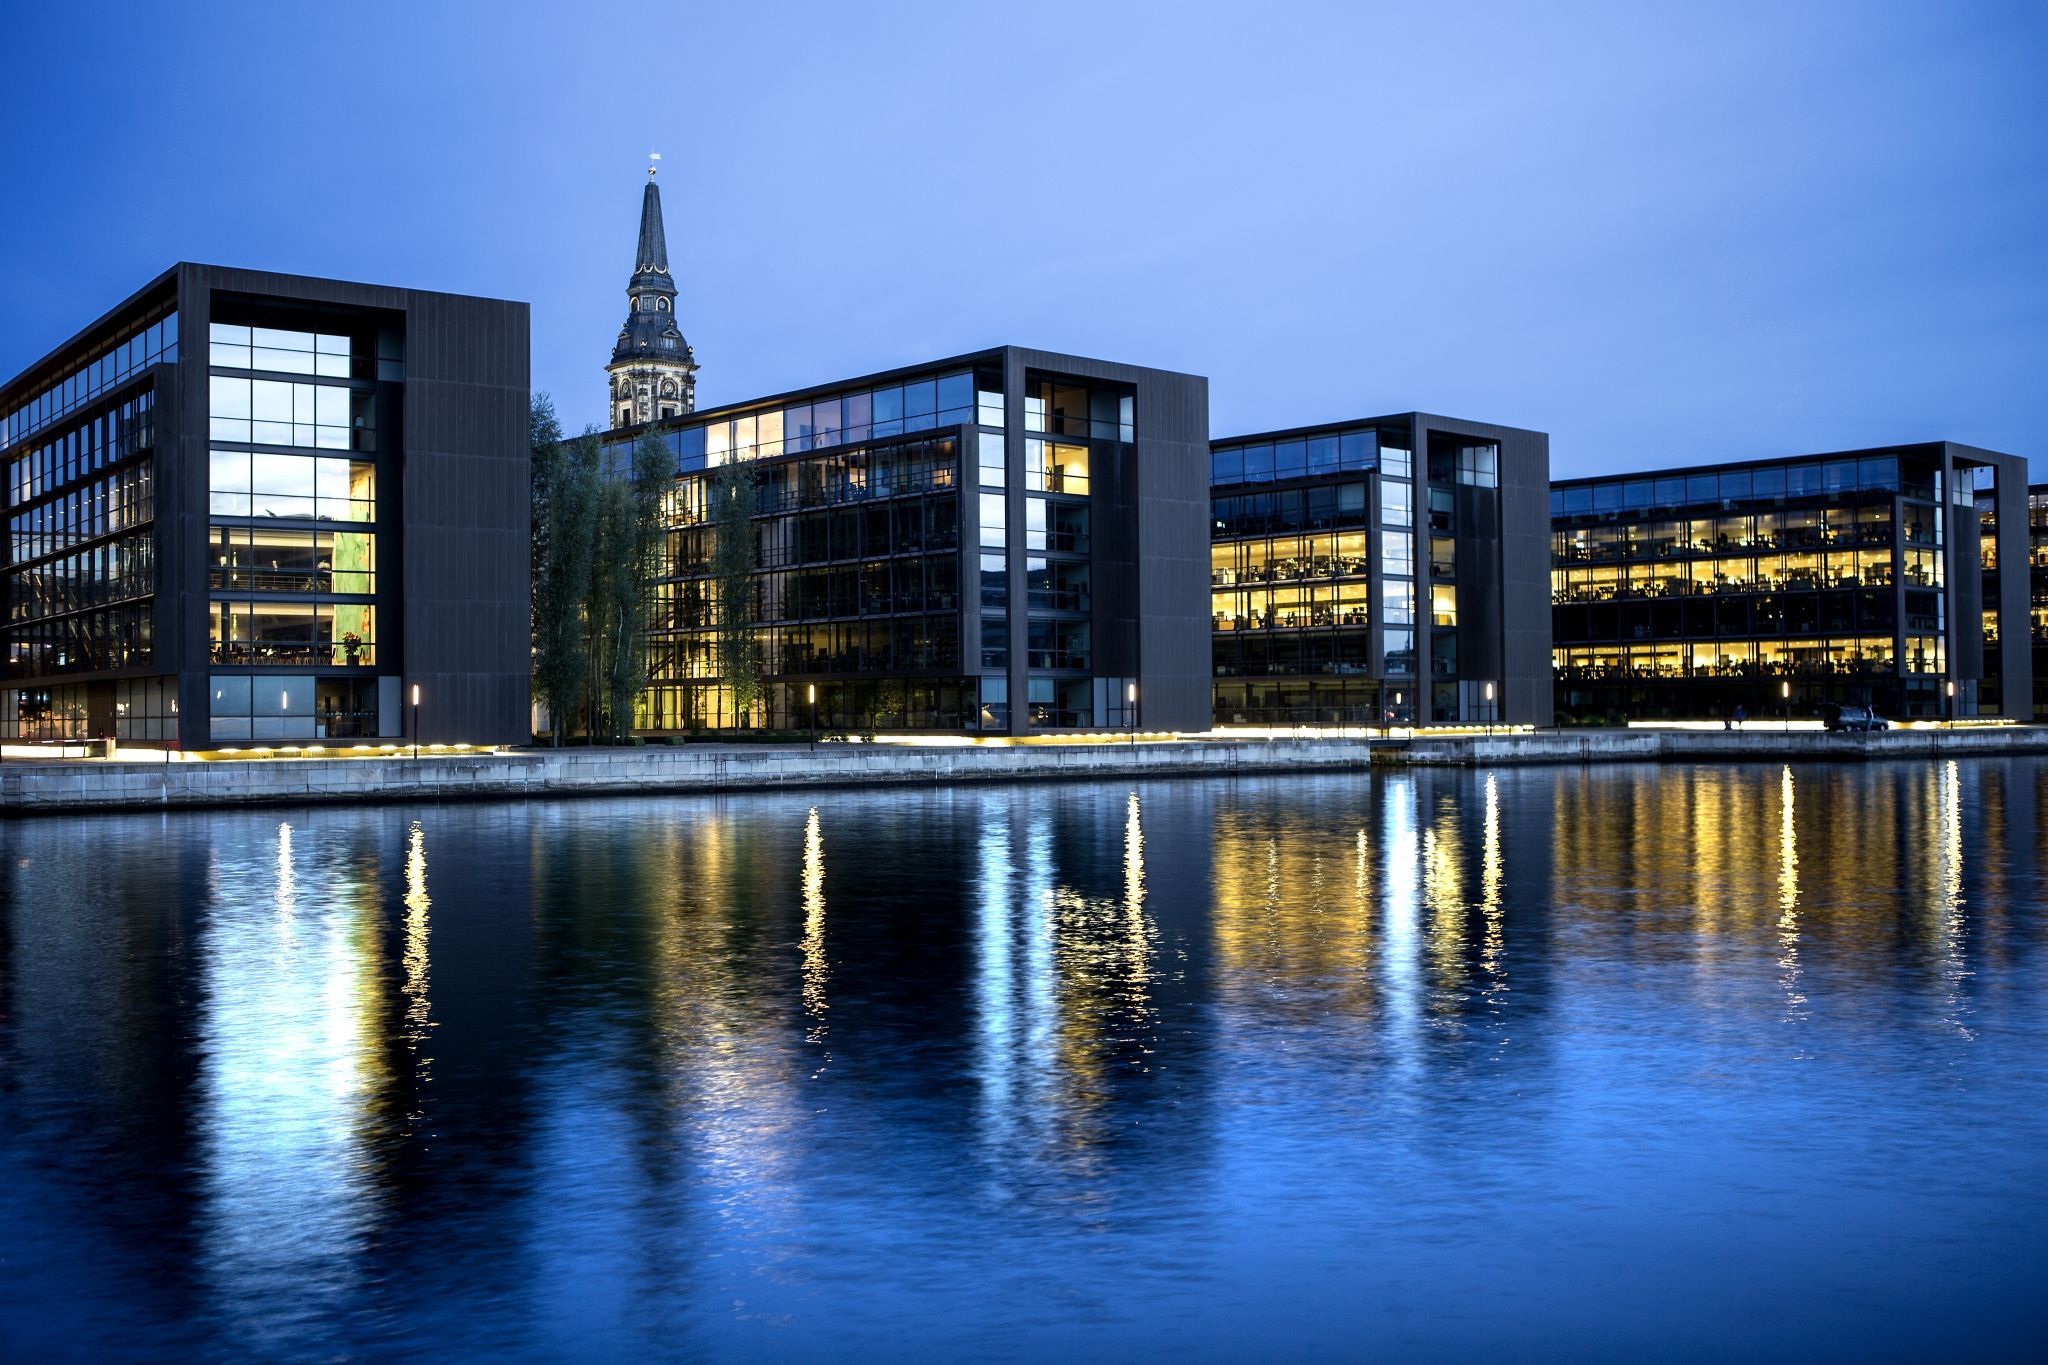 Fire store glasbygninger genspejler vandet i Københavns Havn